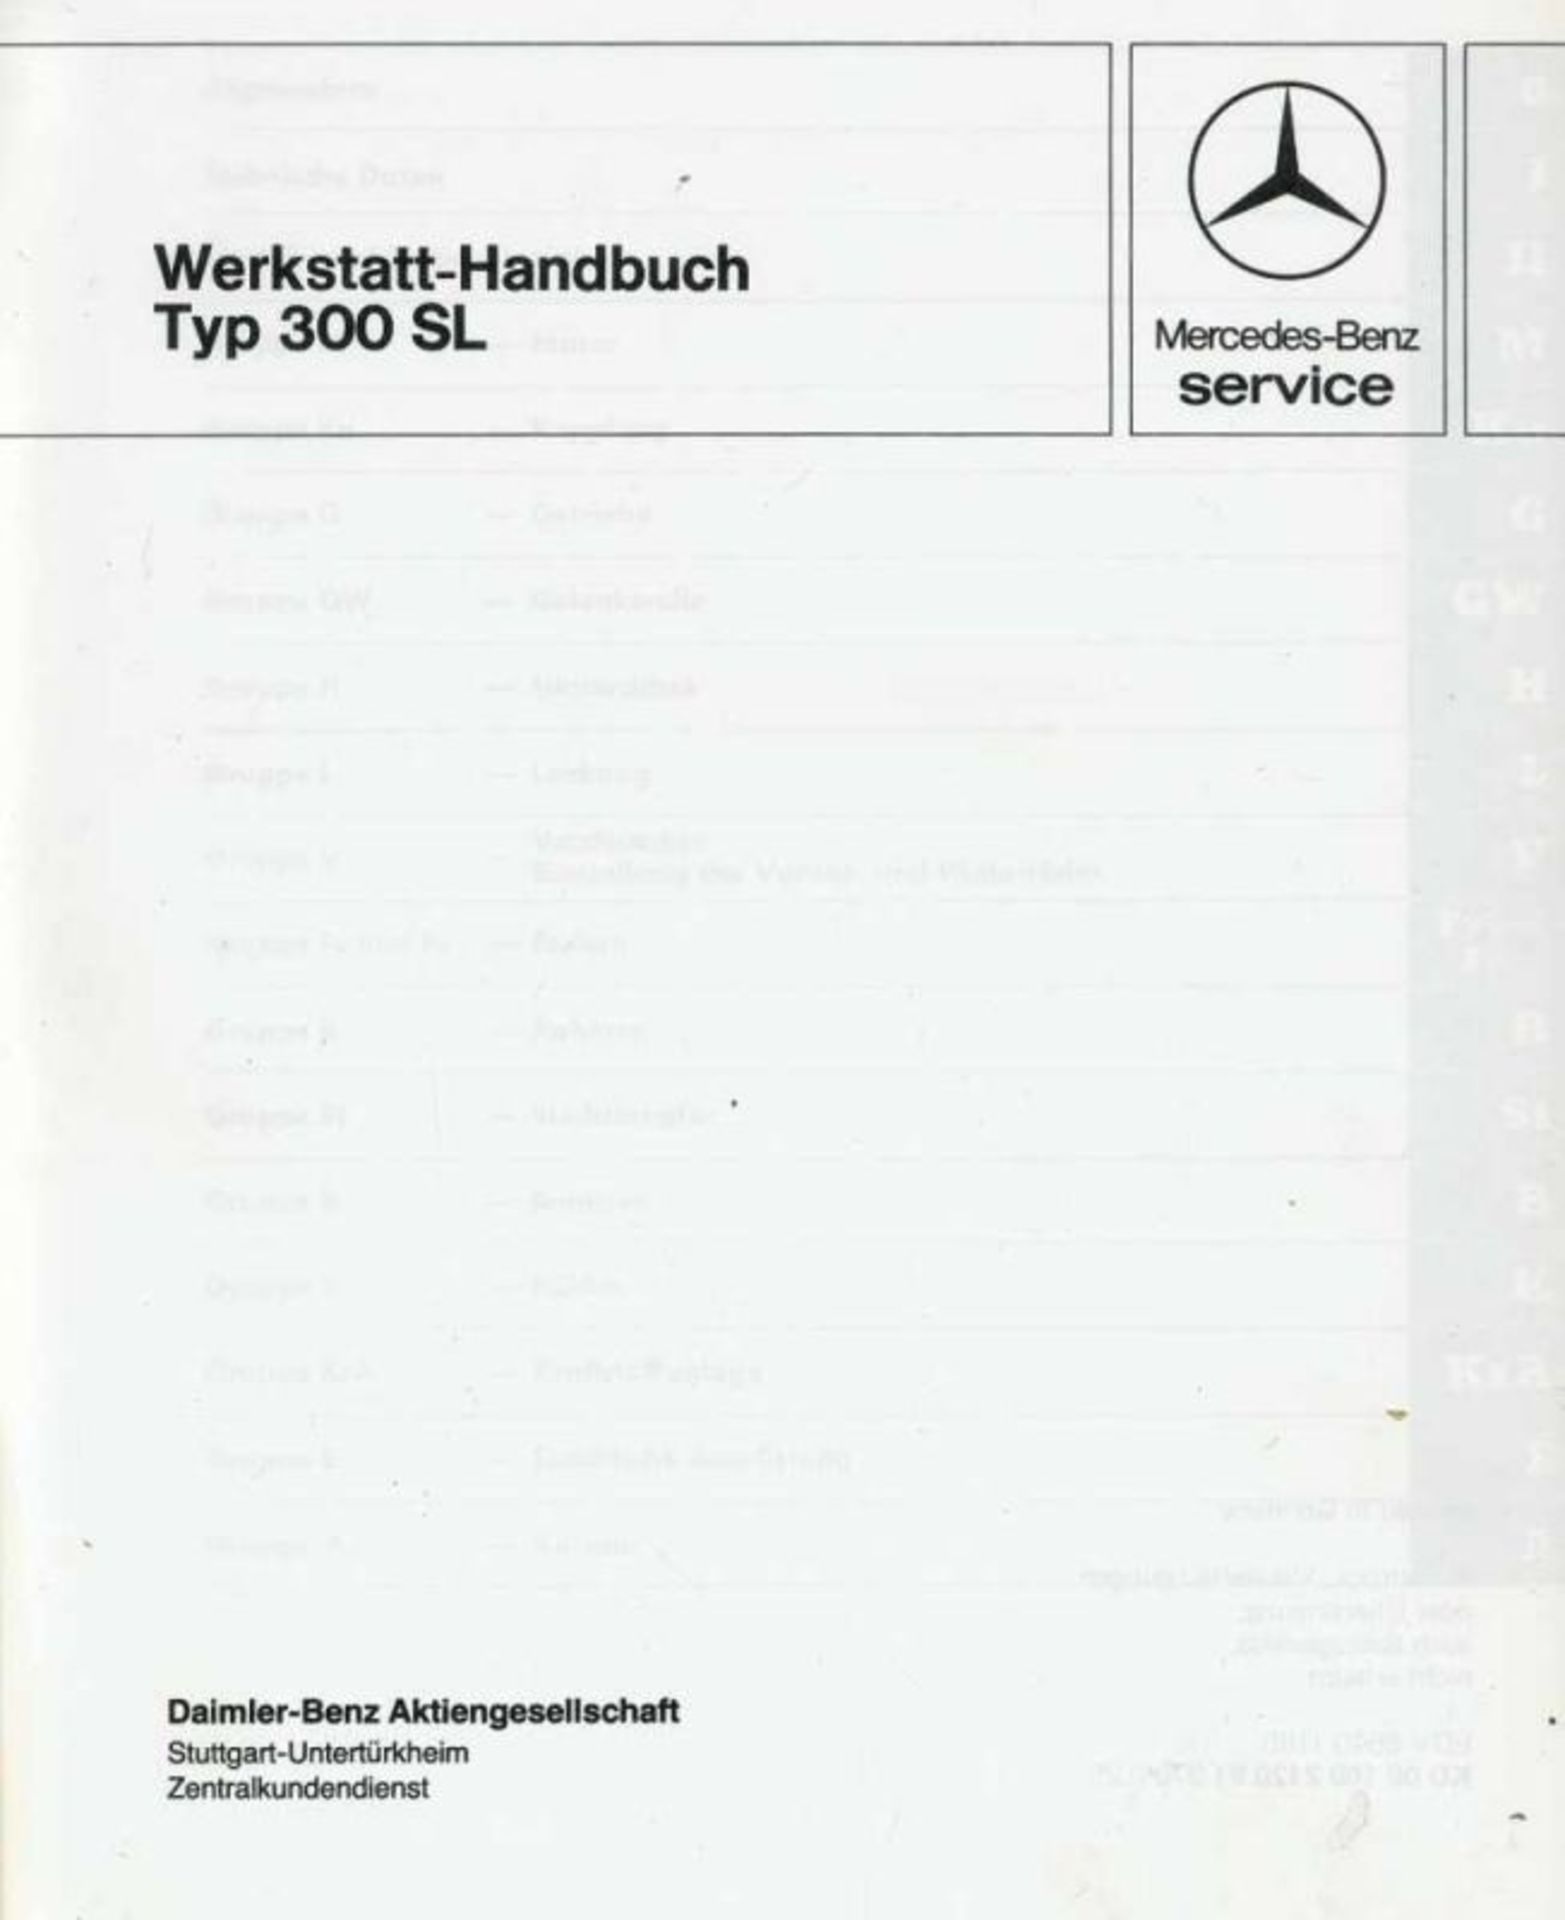 Mercedes-Benz.Werkstatt-Handbuch. Typ 300 SL. Stgt., Daimler-Benz AG o.J. (um 1965). 4°. Mit